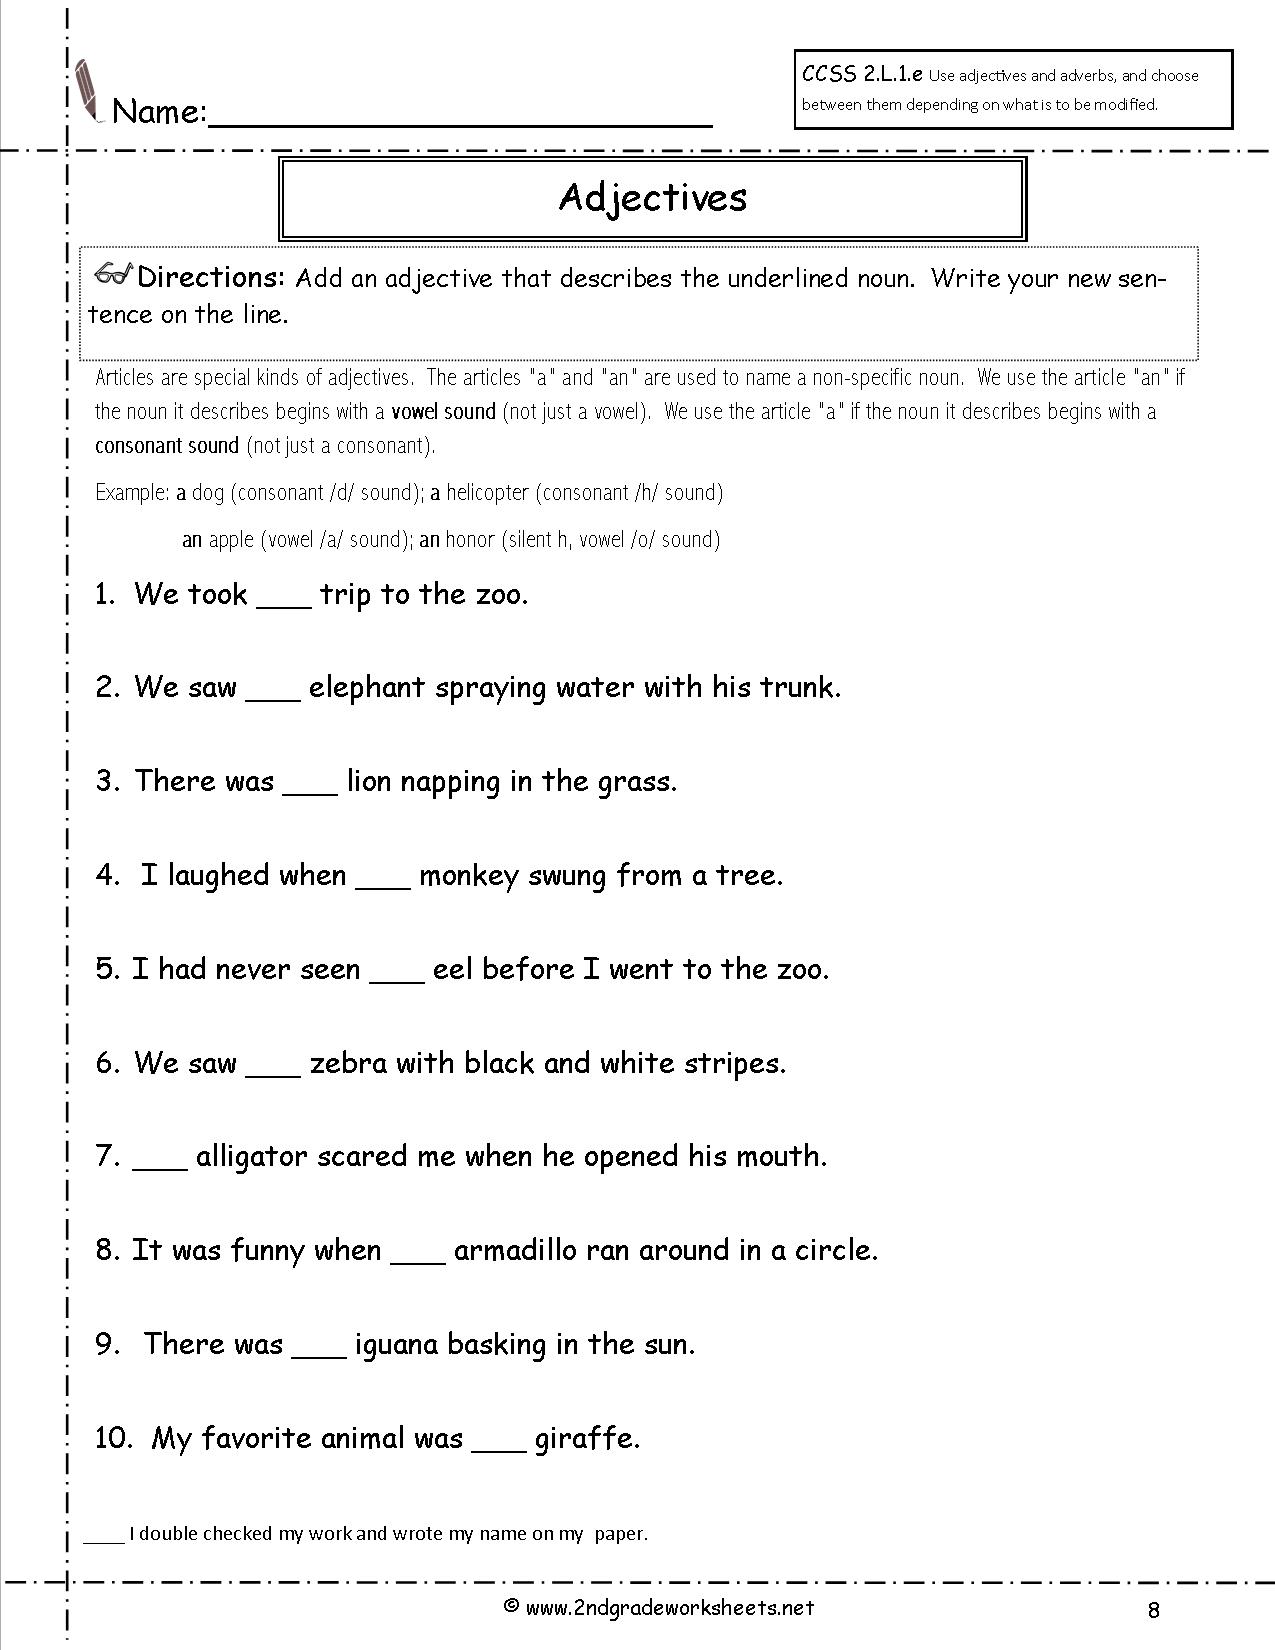 14-best-images-of-forming-sentences-worksheets-2nd-grade-grammar-worksheets-adjectives